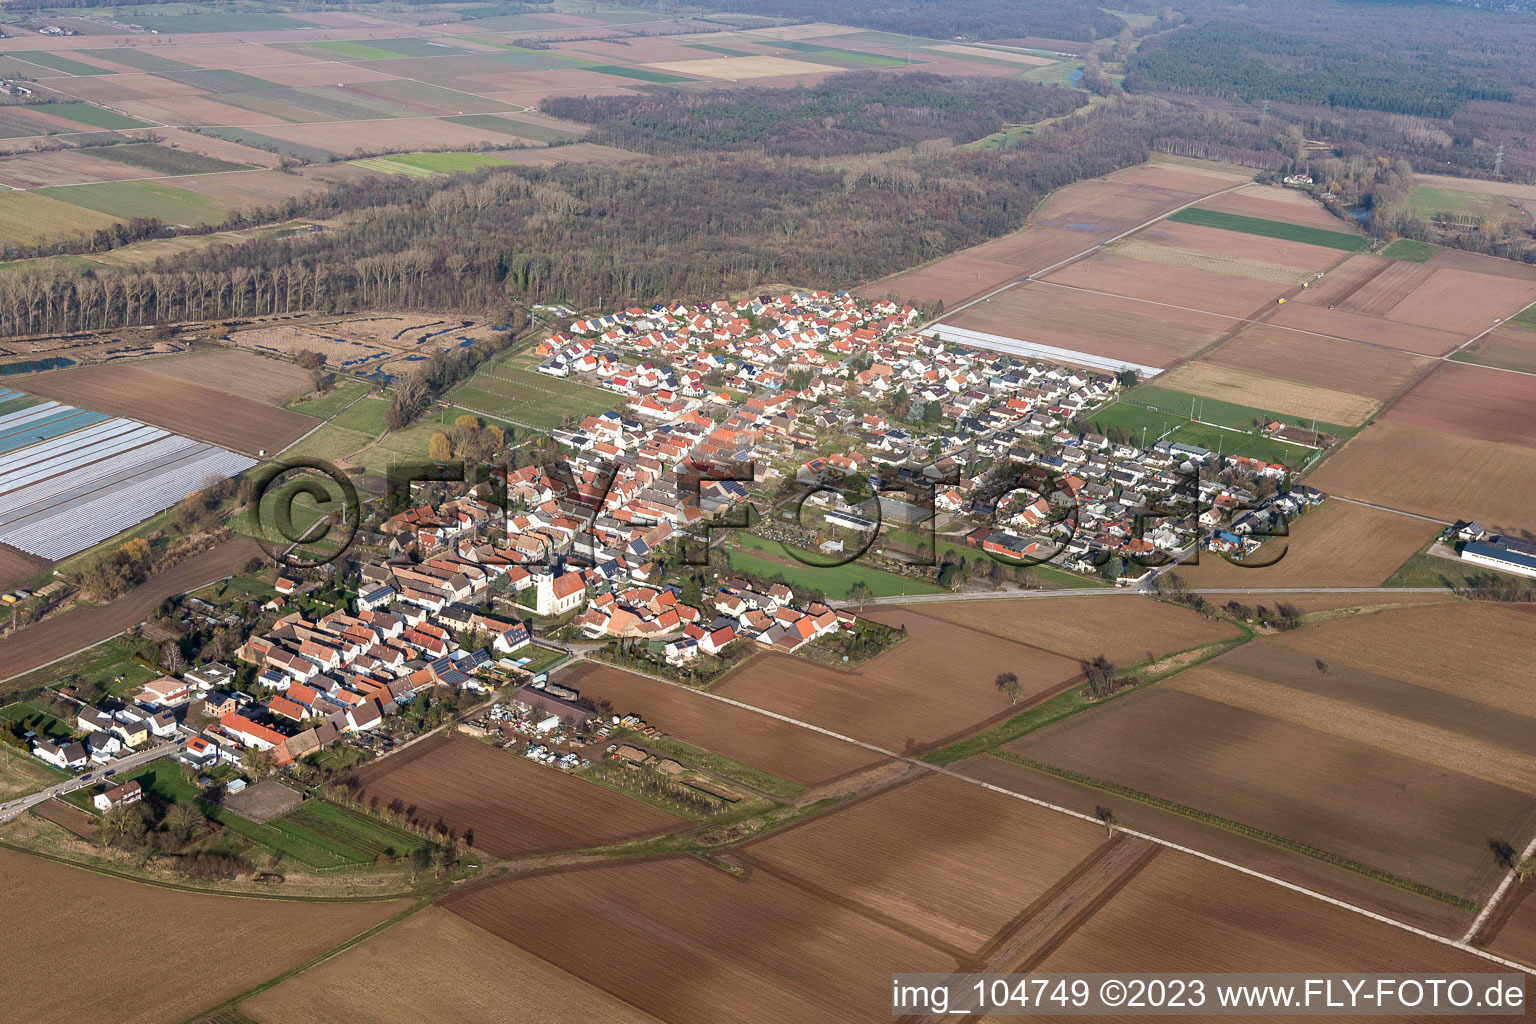 Freisbach dans le département Rhénanie-Palatinat, Allemagne hors des airs